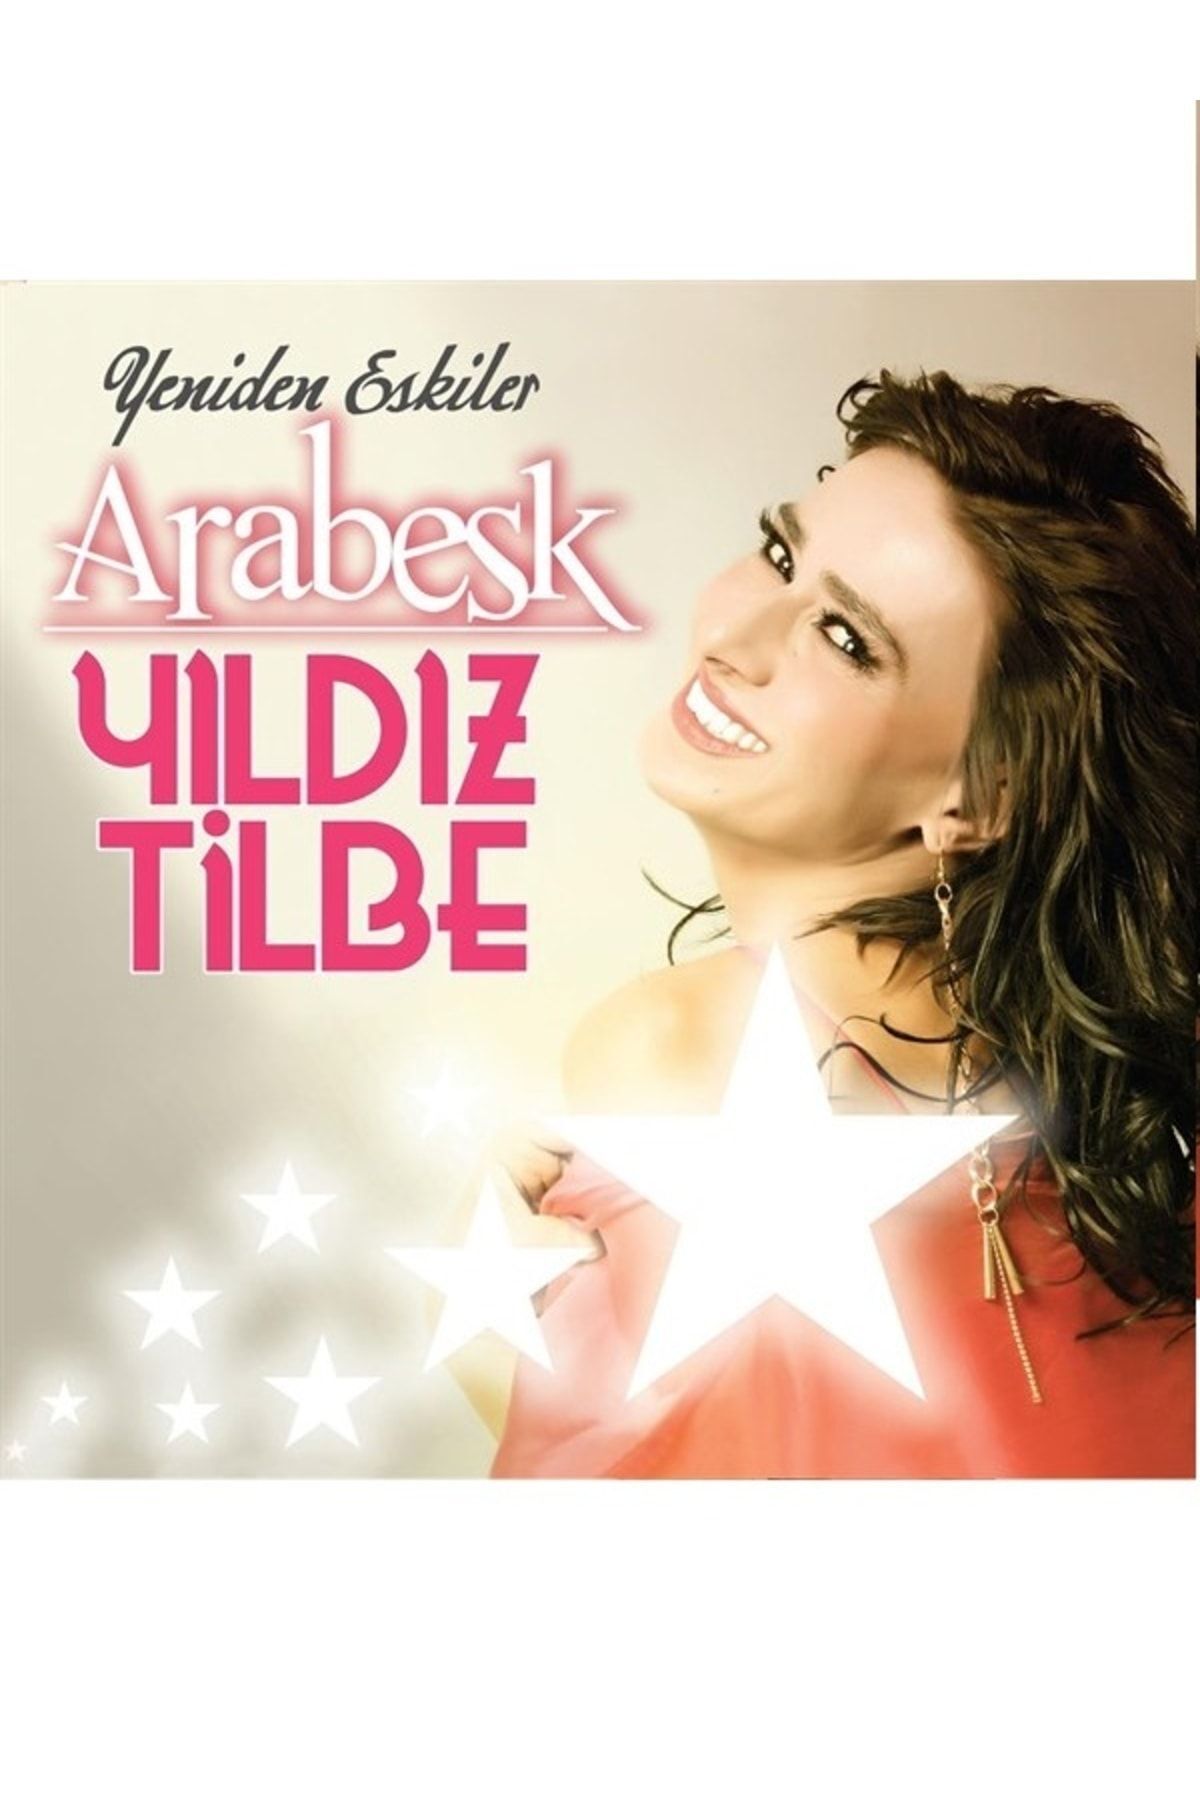 Ali The Stereo Yıldız Tilbe - 2x LP  Arabesk Vinly Plak alithestereo